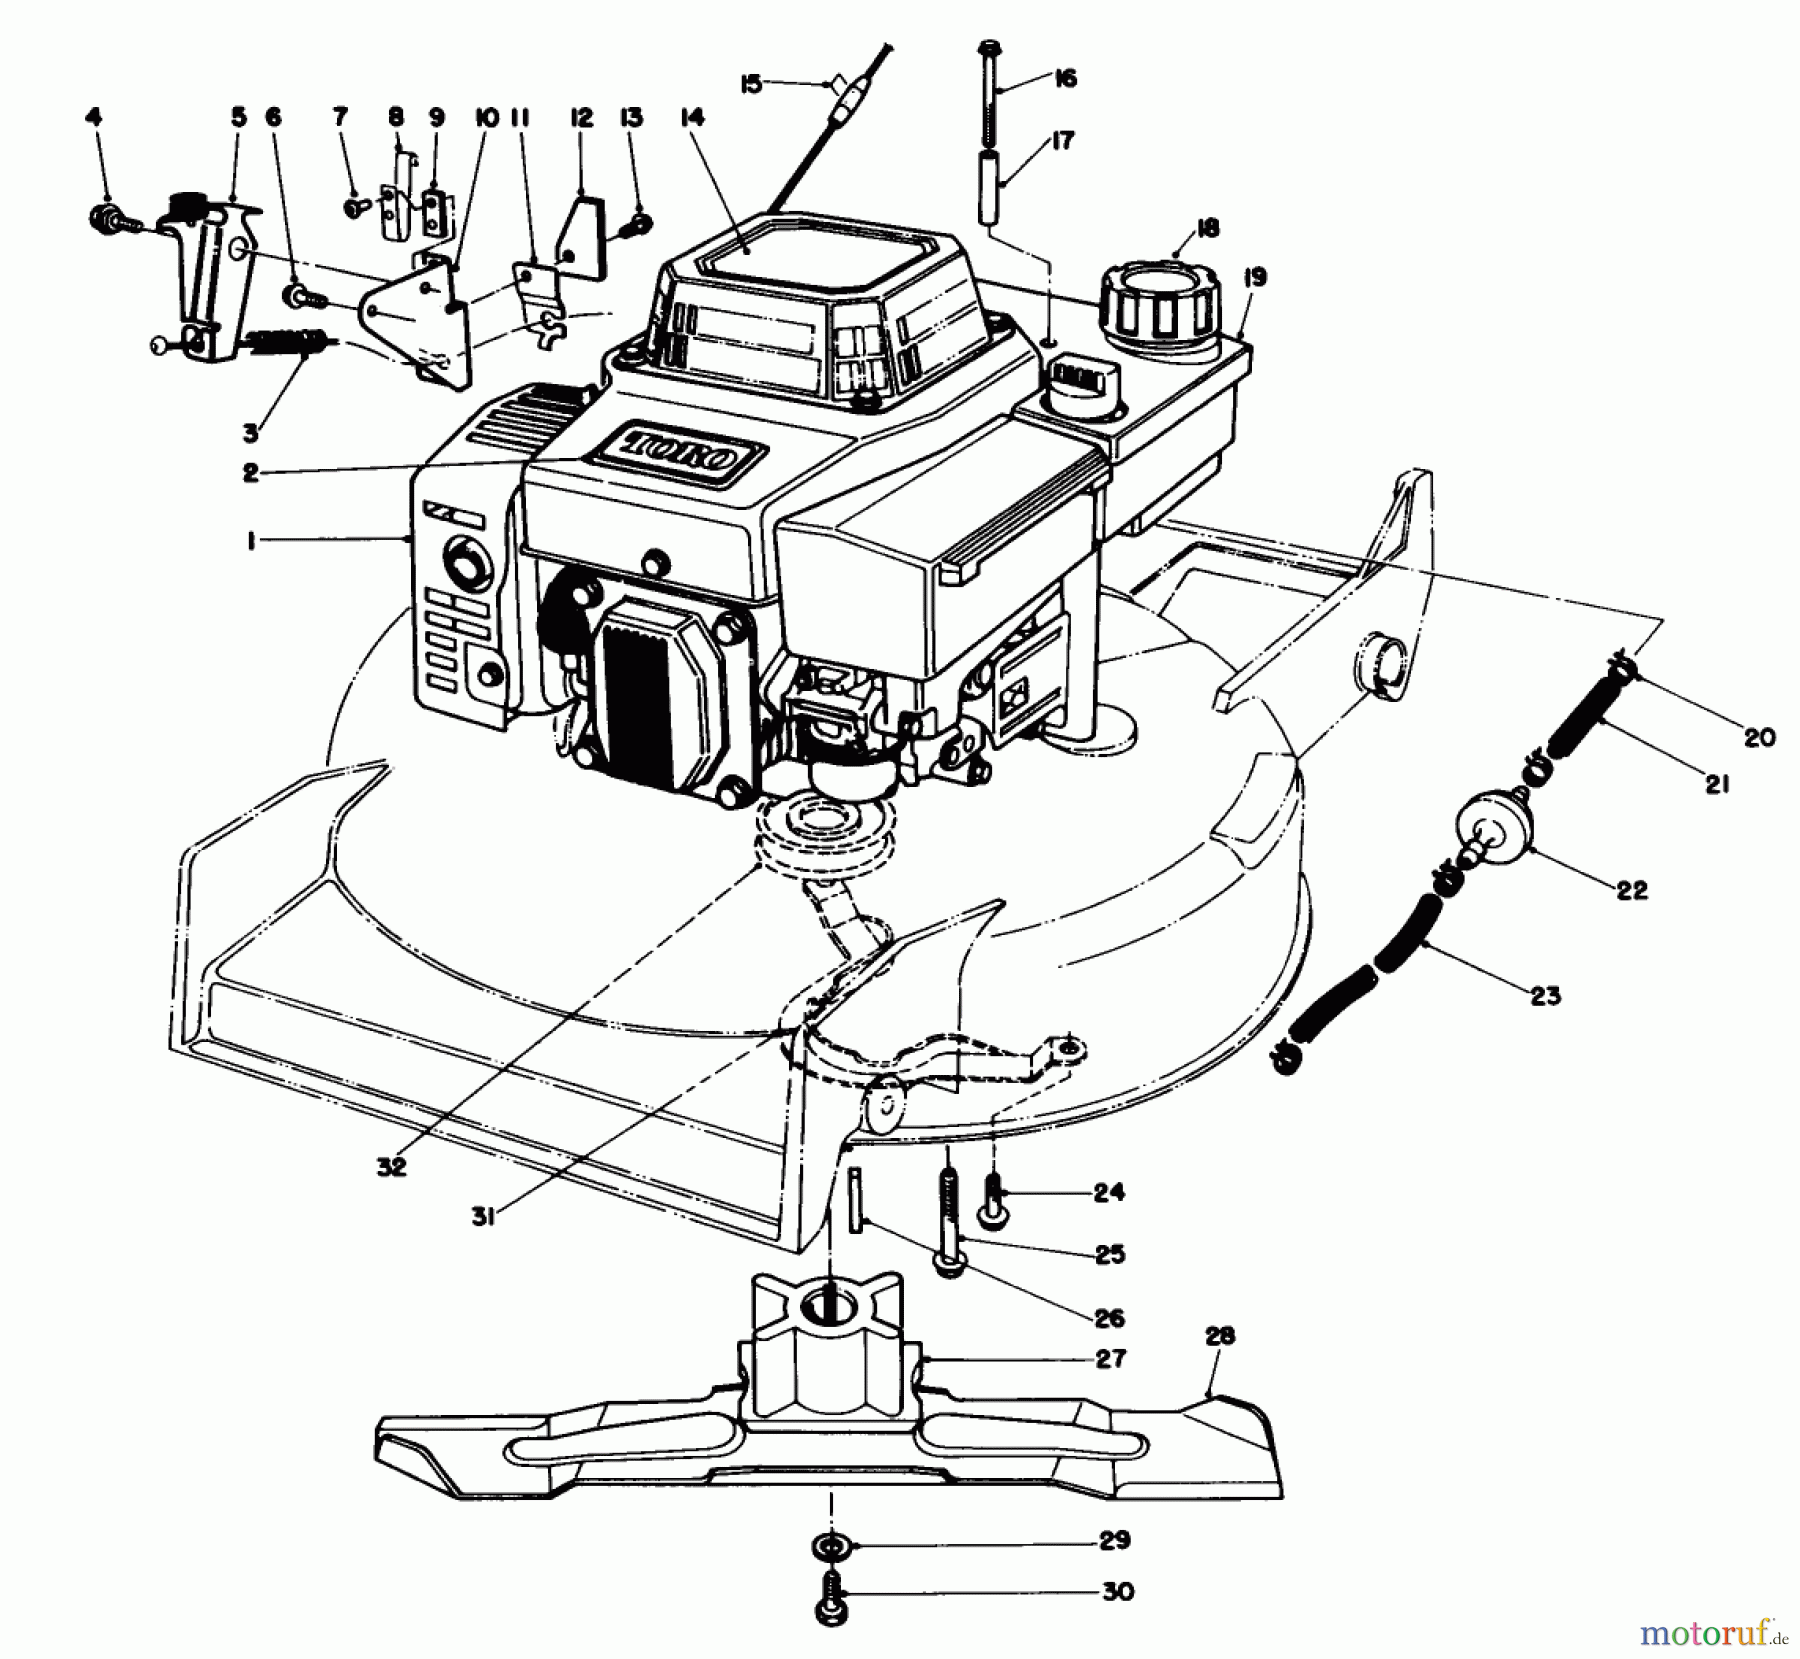  Toro Neu Mowers, Walk-Behind Seite 1 20620 - Toro Lawnmower, 1986 (6000001-6999999) ENGINE ASSEMBLY #1